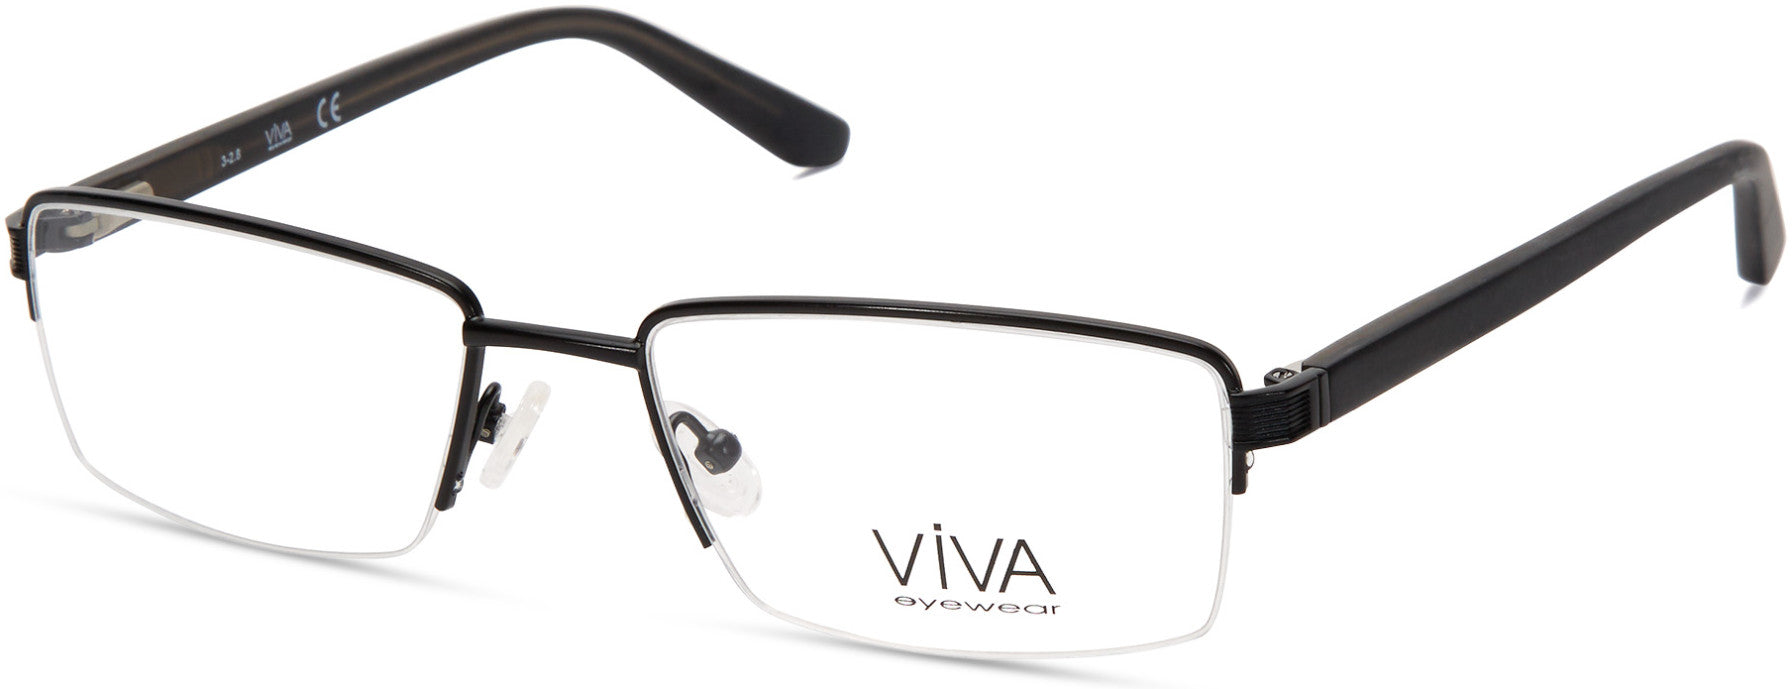 Viva VV4039 Eyeglasses 002-002 - Matte Black